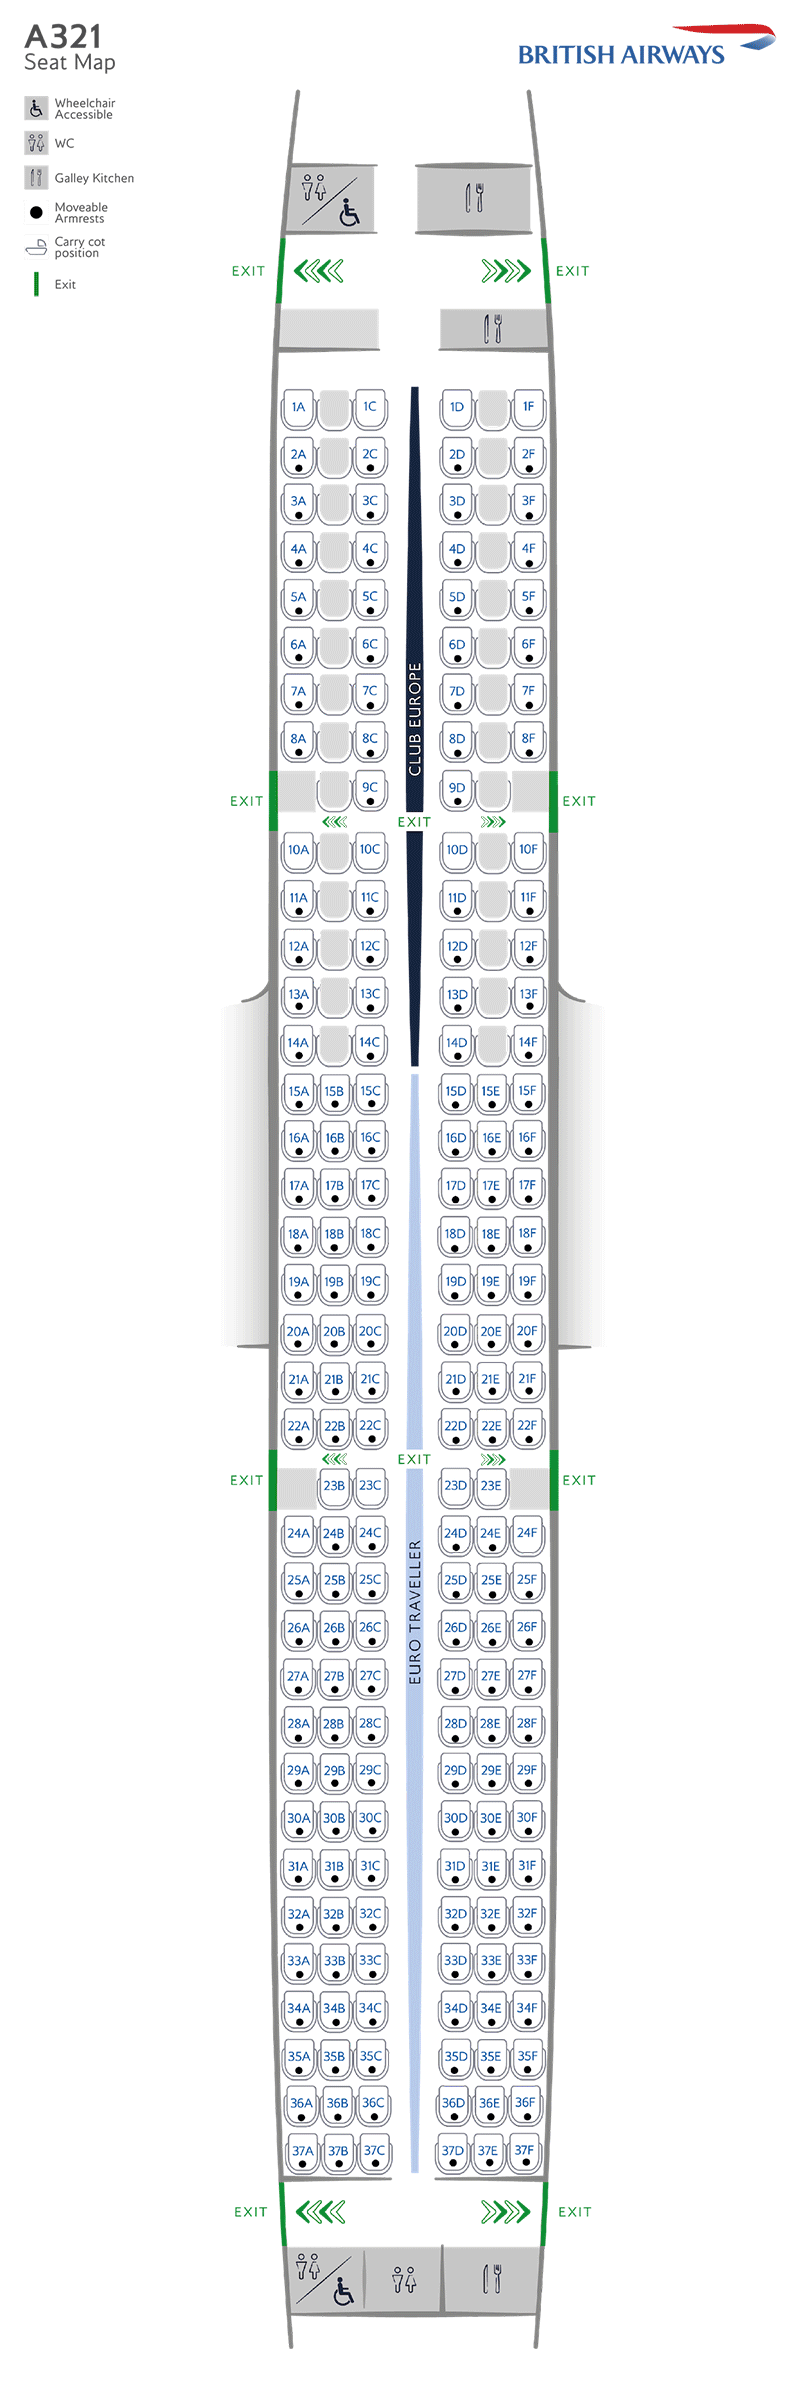 A321-200のシートマップ